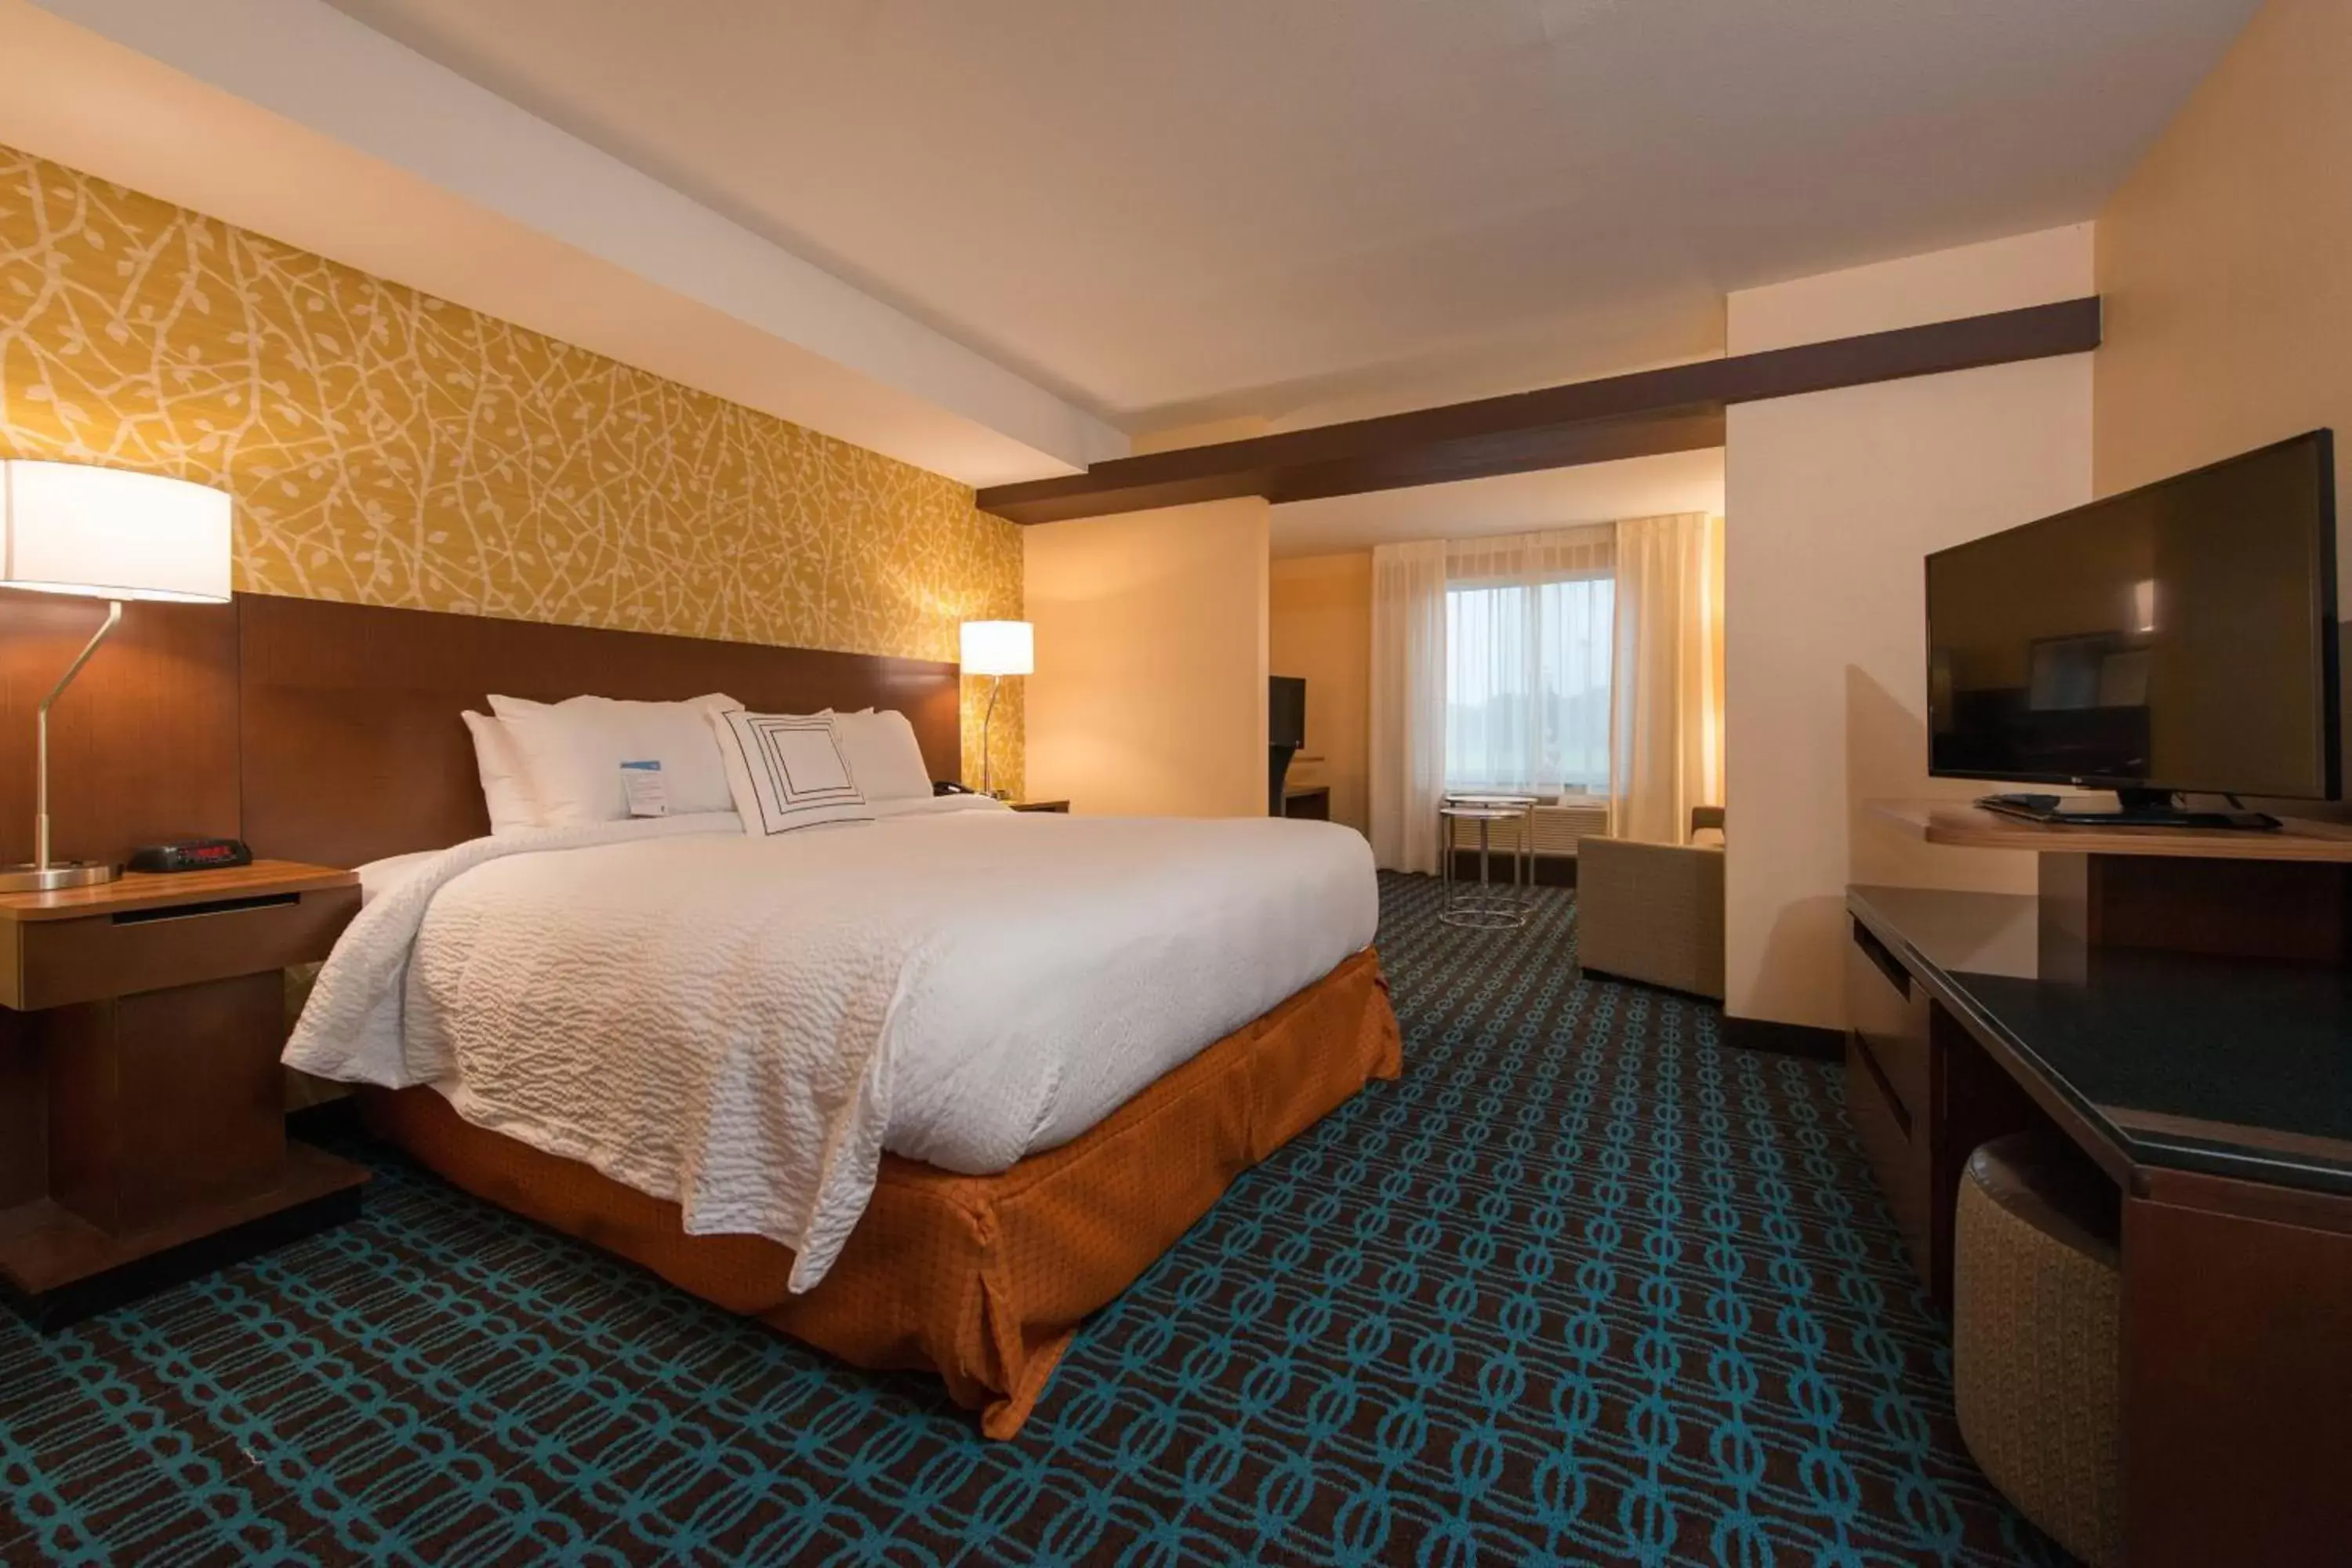 Bedroom, Bed in Fairfield Inn & Suites by Marriott Atmore